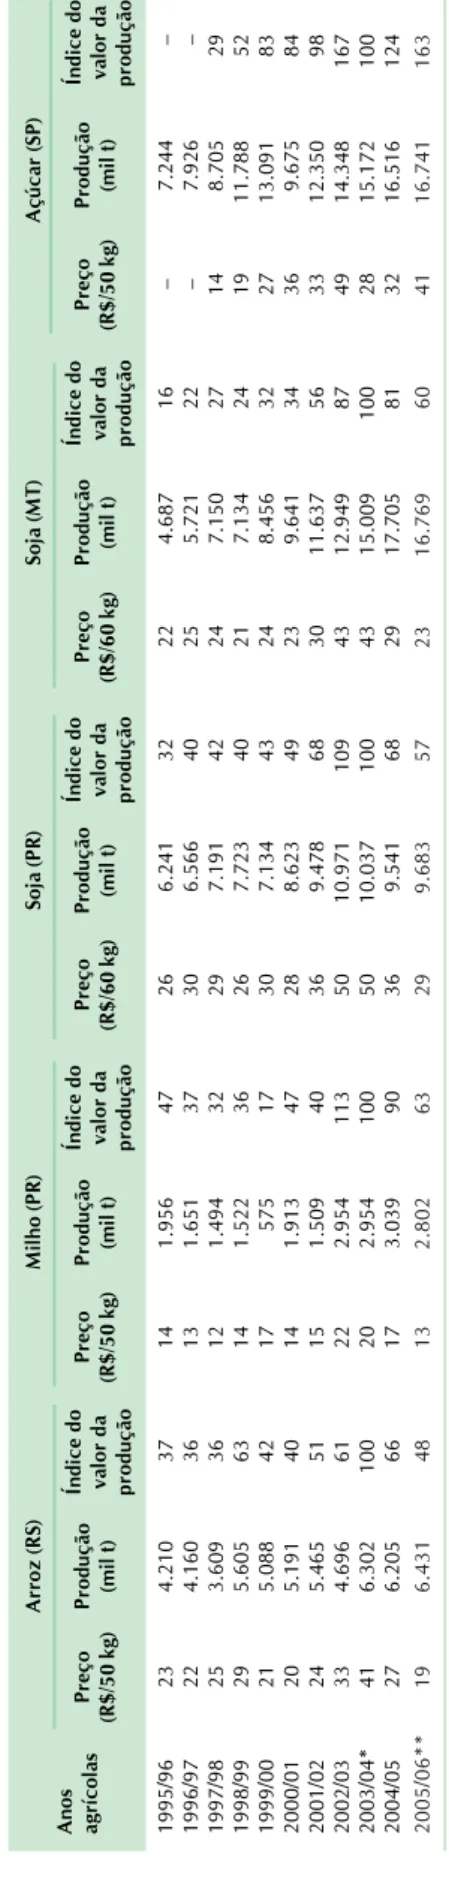 Tabela 10. Índices de preços de insumos no âmbito do produtor (deflator: IPCA).